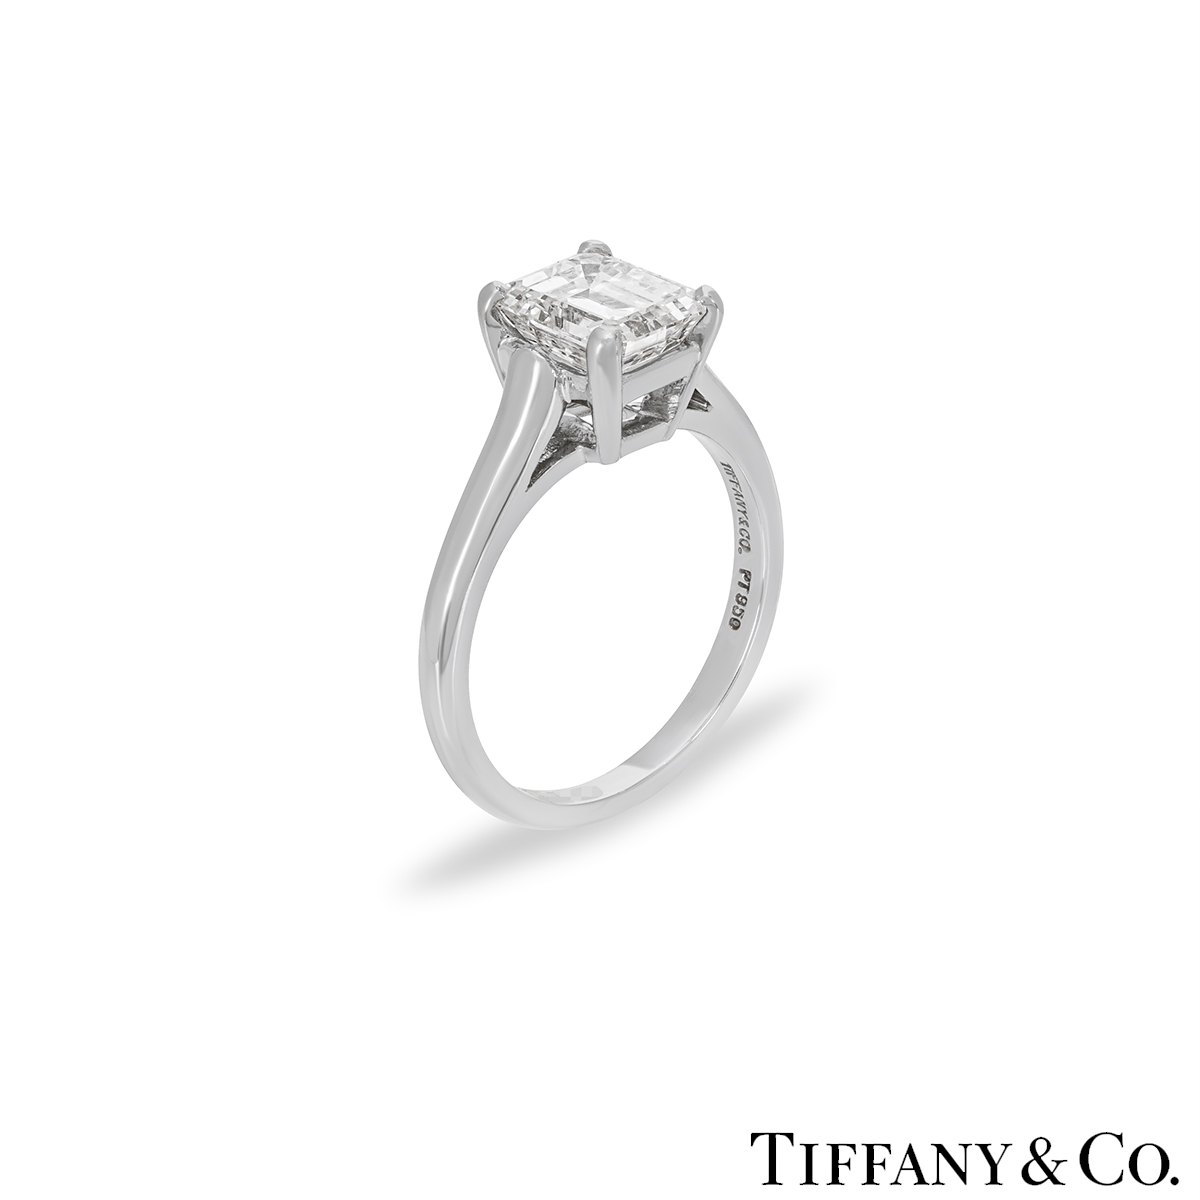 Tiffany & Co. Emerald Cut Diamond Ring 1.59ct E/VS1